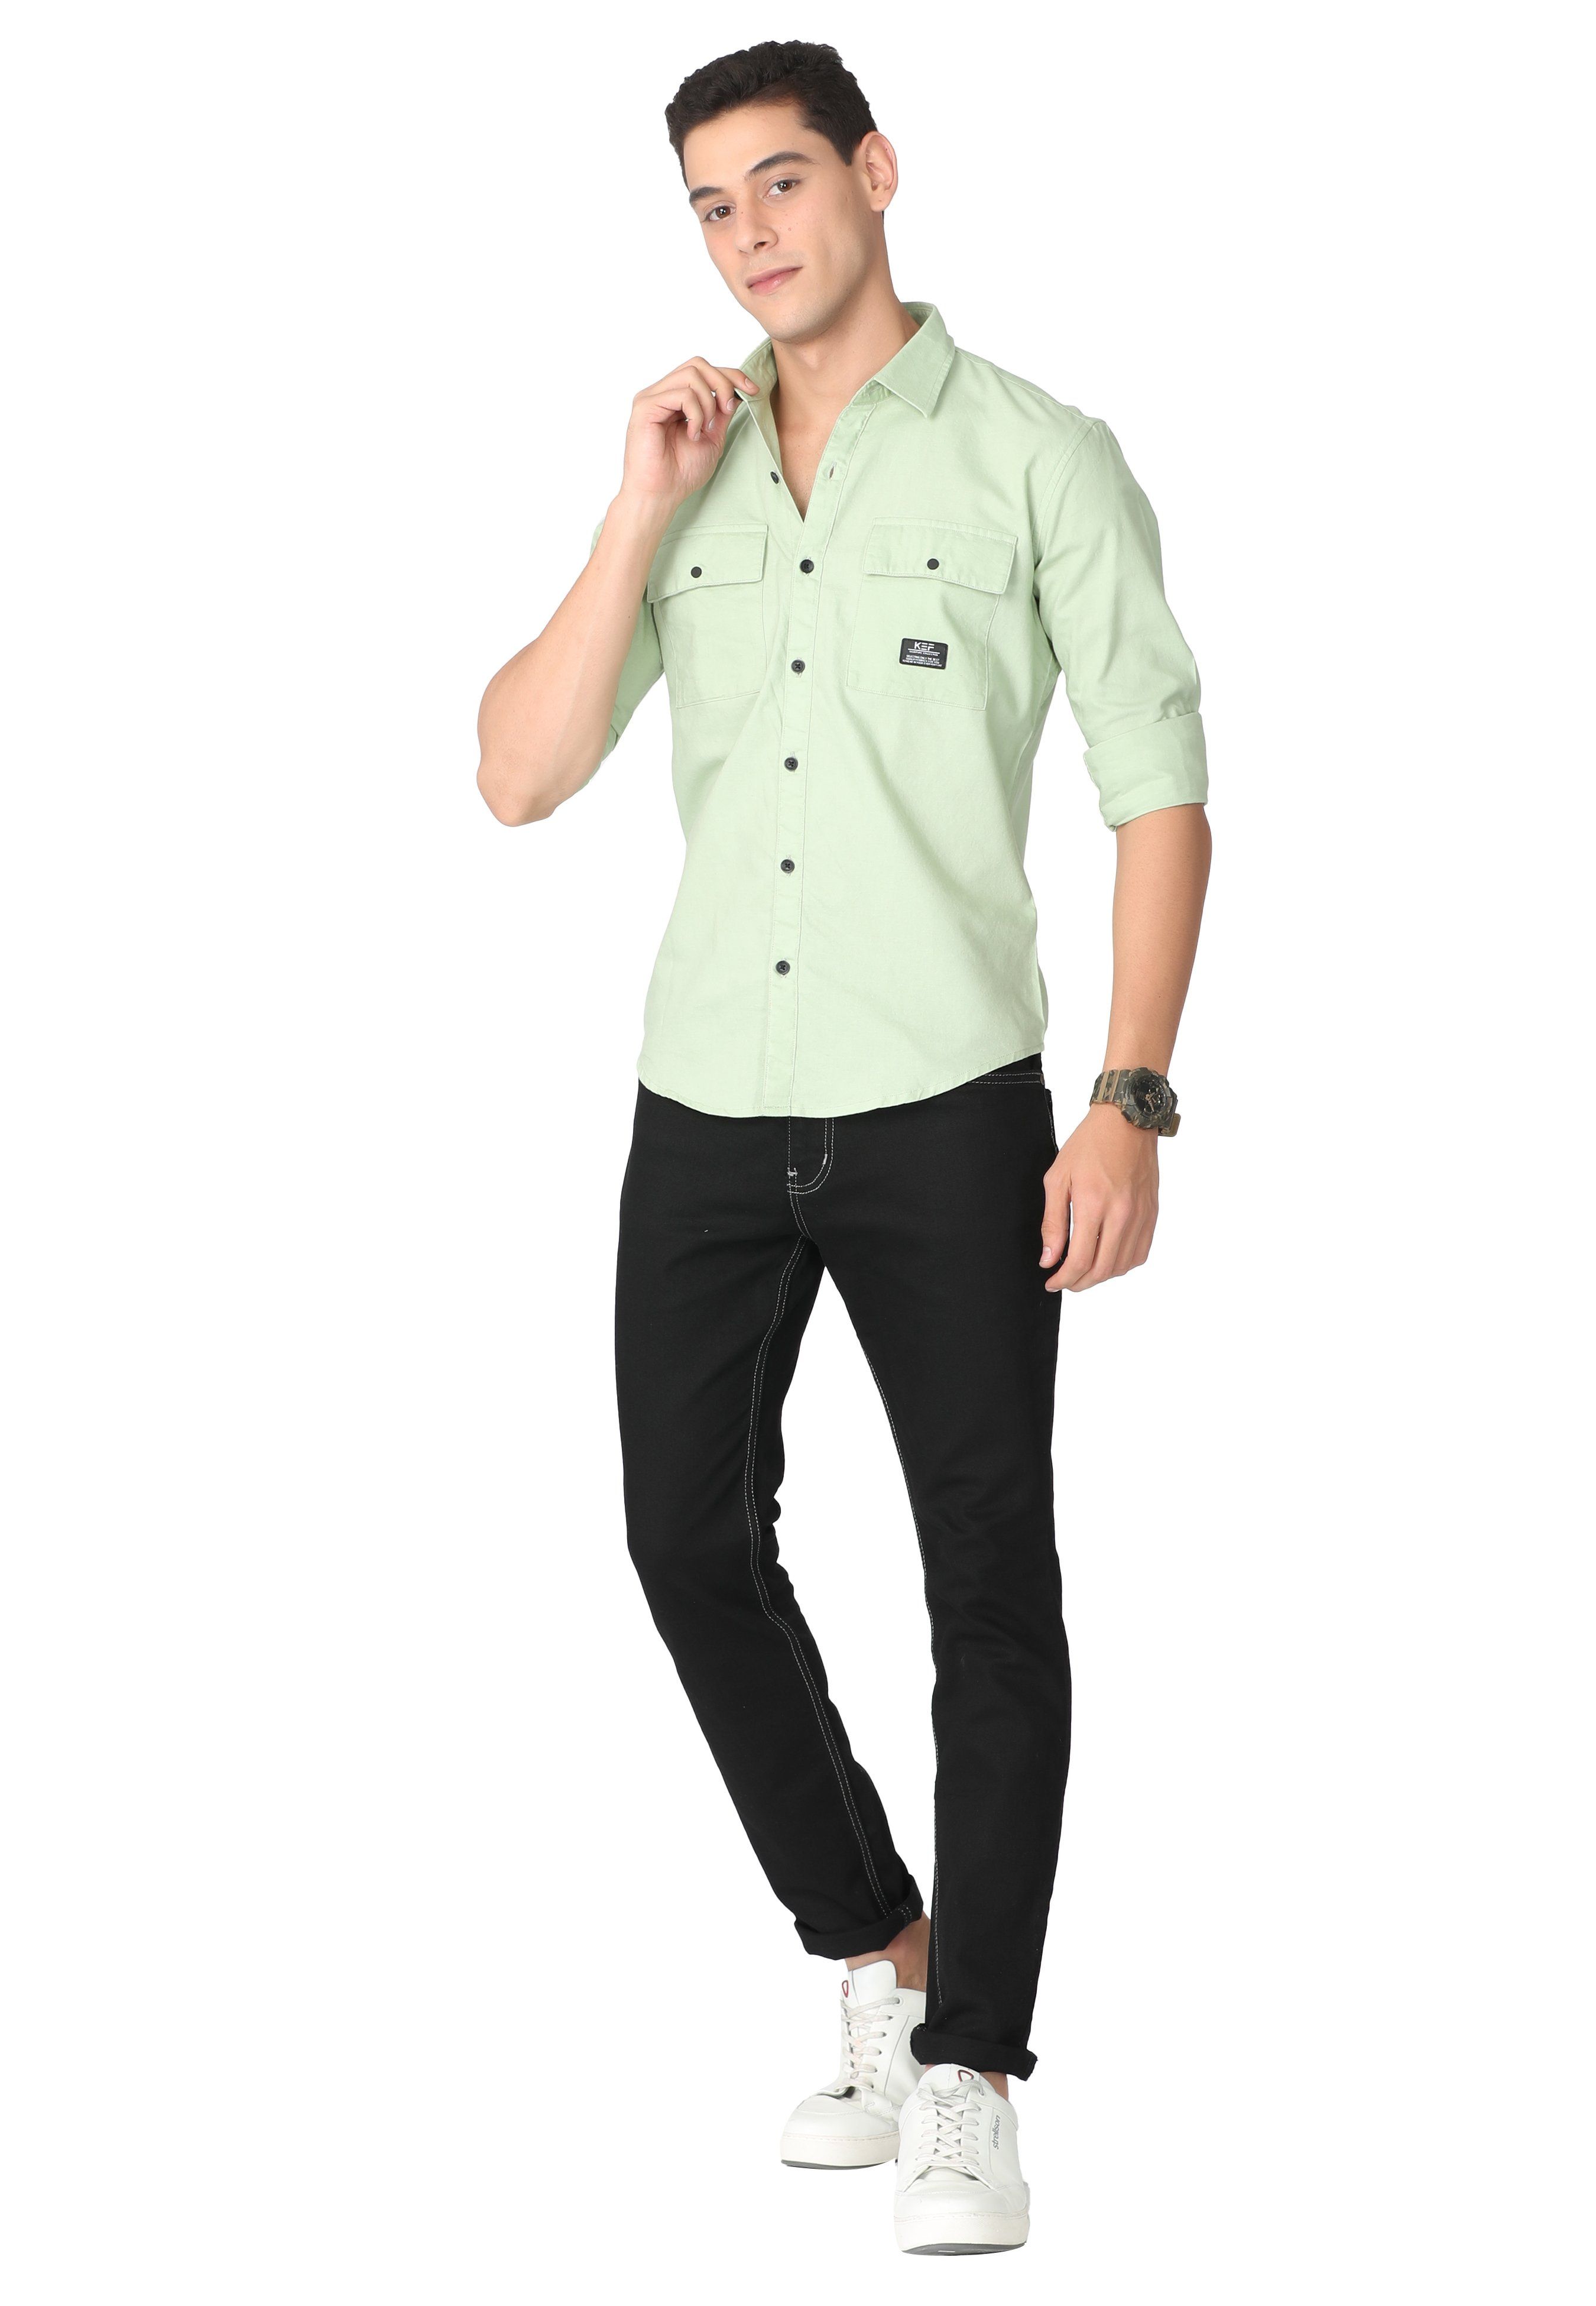 Light Green Regular Fit Casual Shirt Shirts KEF 